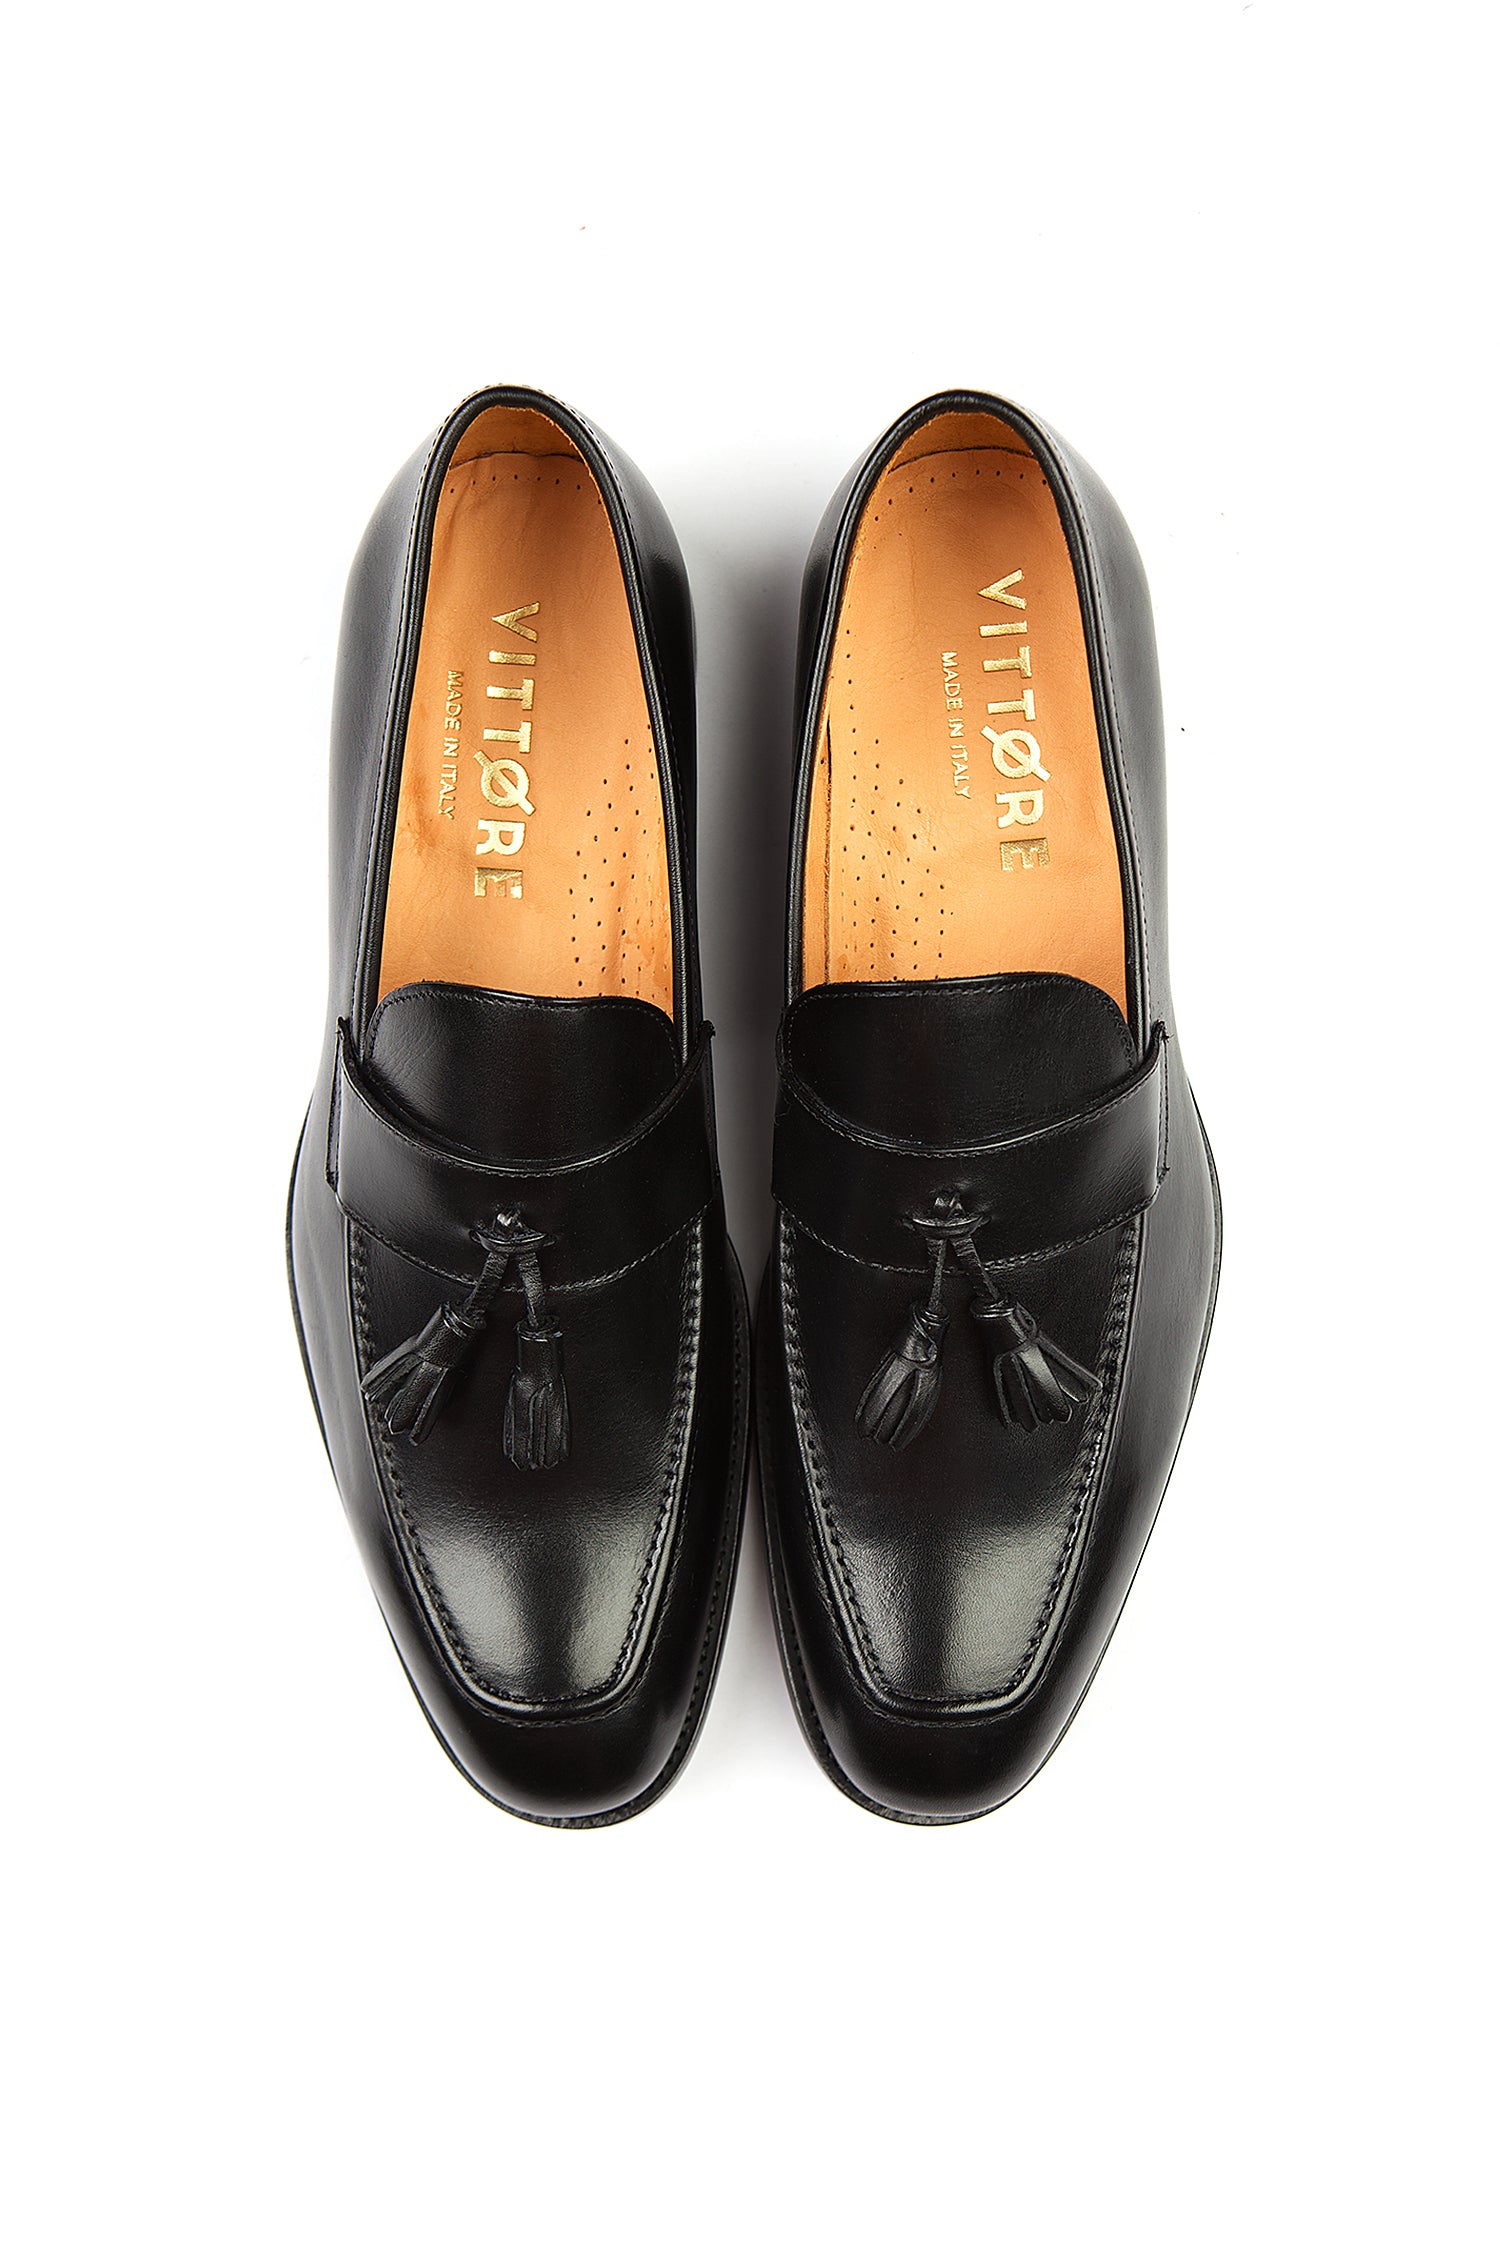 black tassel loafers Italian shoes